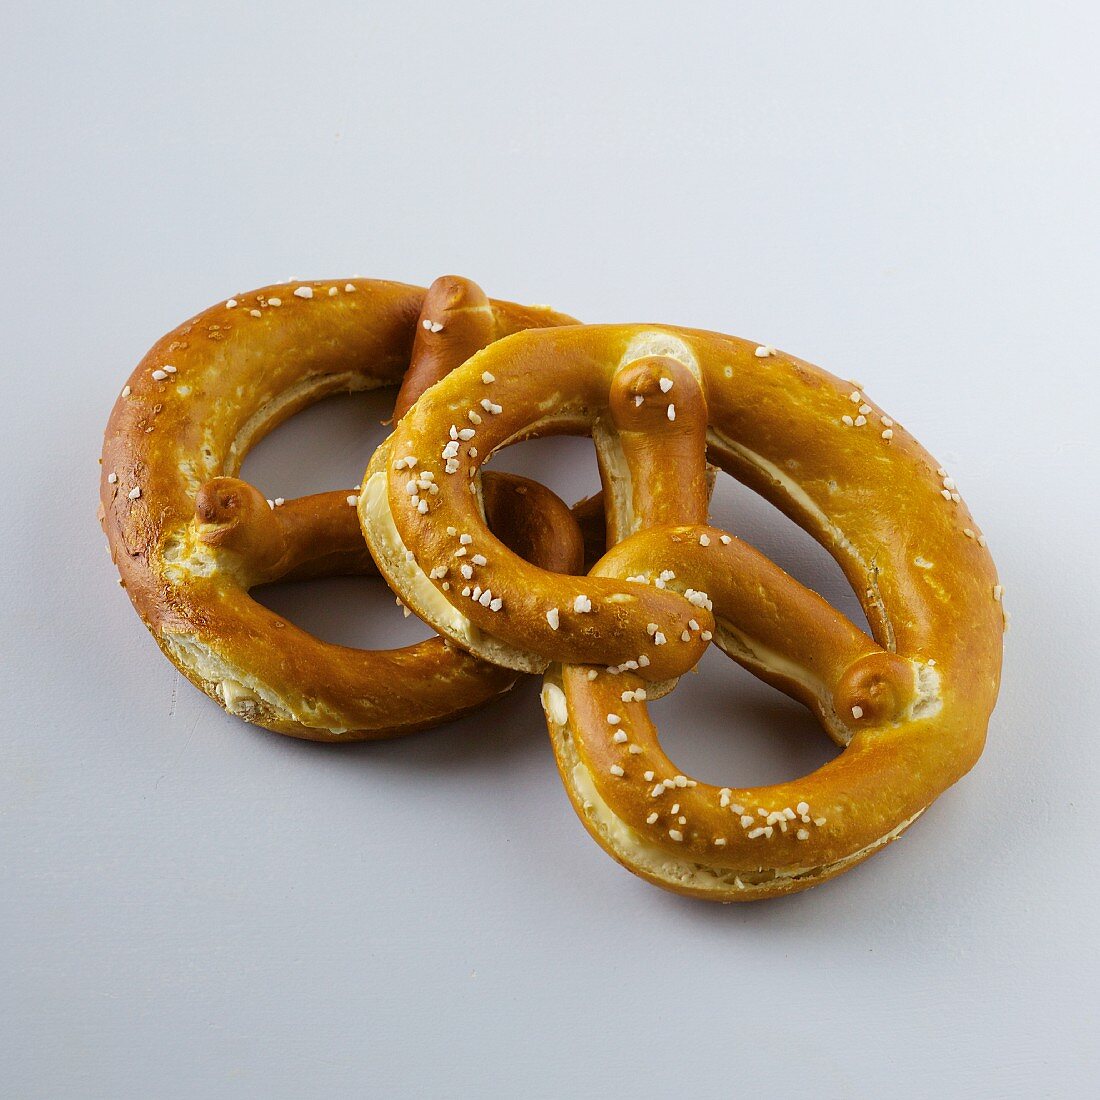 Two butter lye bread pretzels